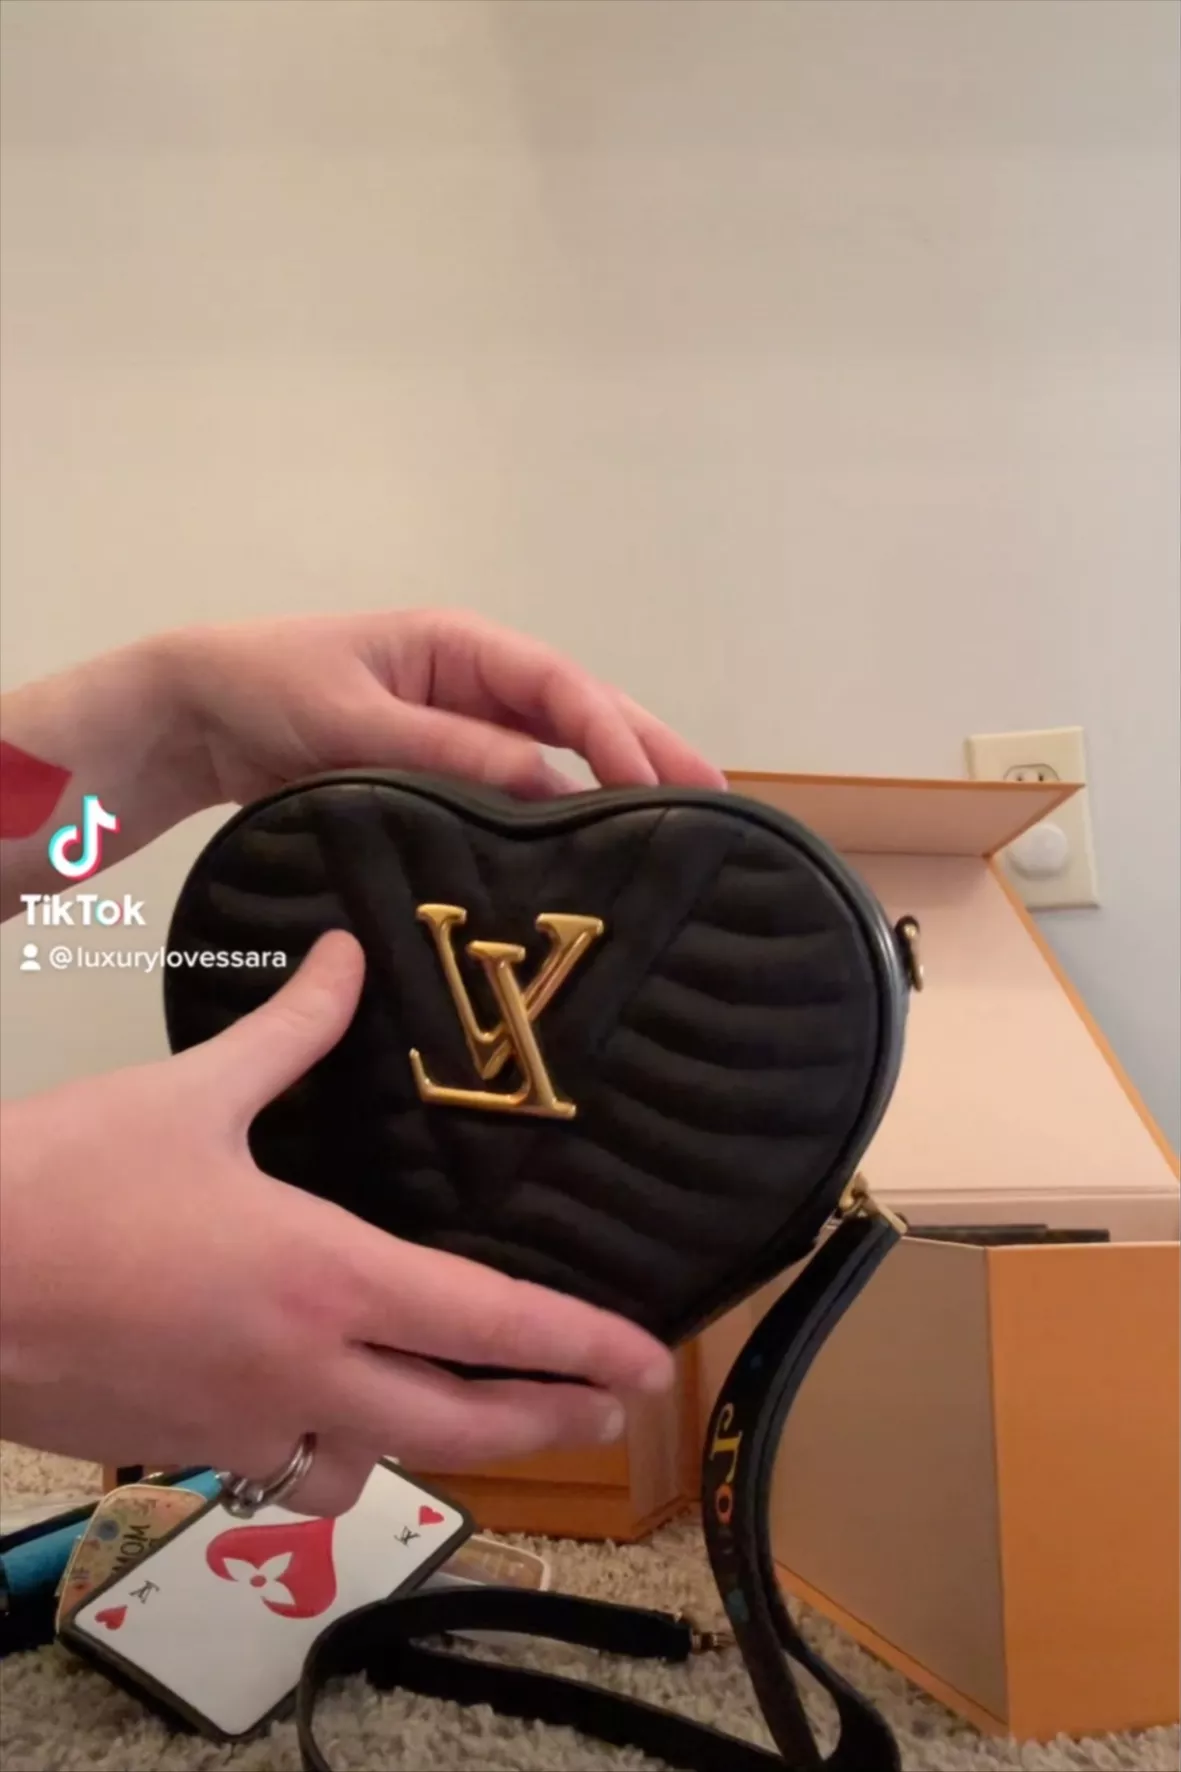 Louis Vuitton M52796 NEW WAVE HEART Bag